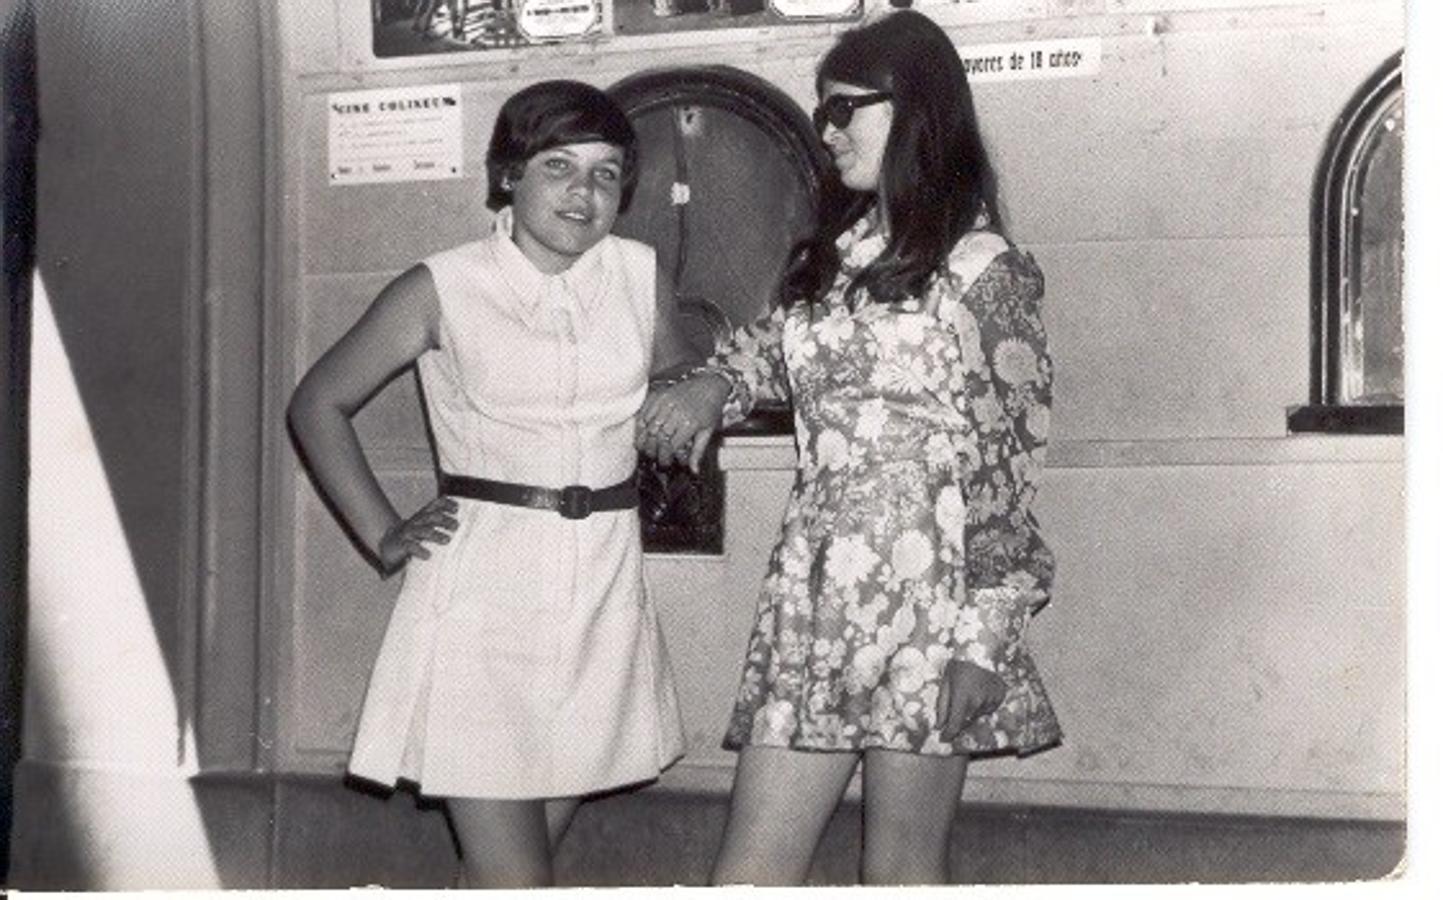 Dos amigas en la taquilla del cine vestidas de domingo. 1969. Valdeverdeja (Toledo). Fondo Los Legados de la Tierra.v. 